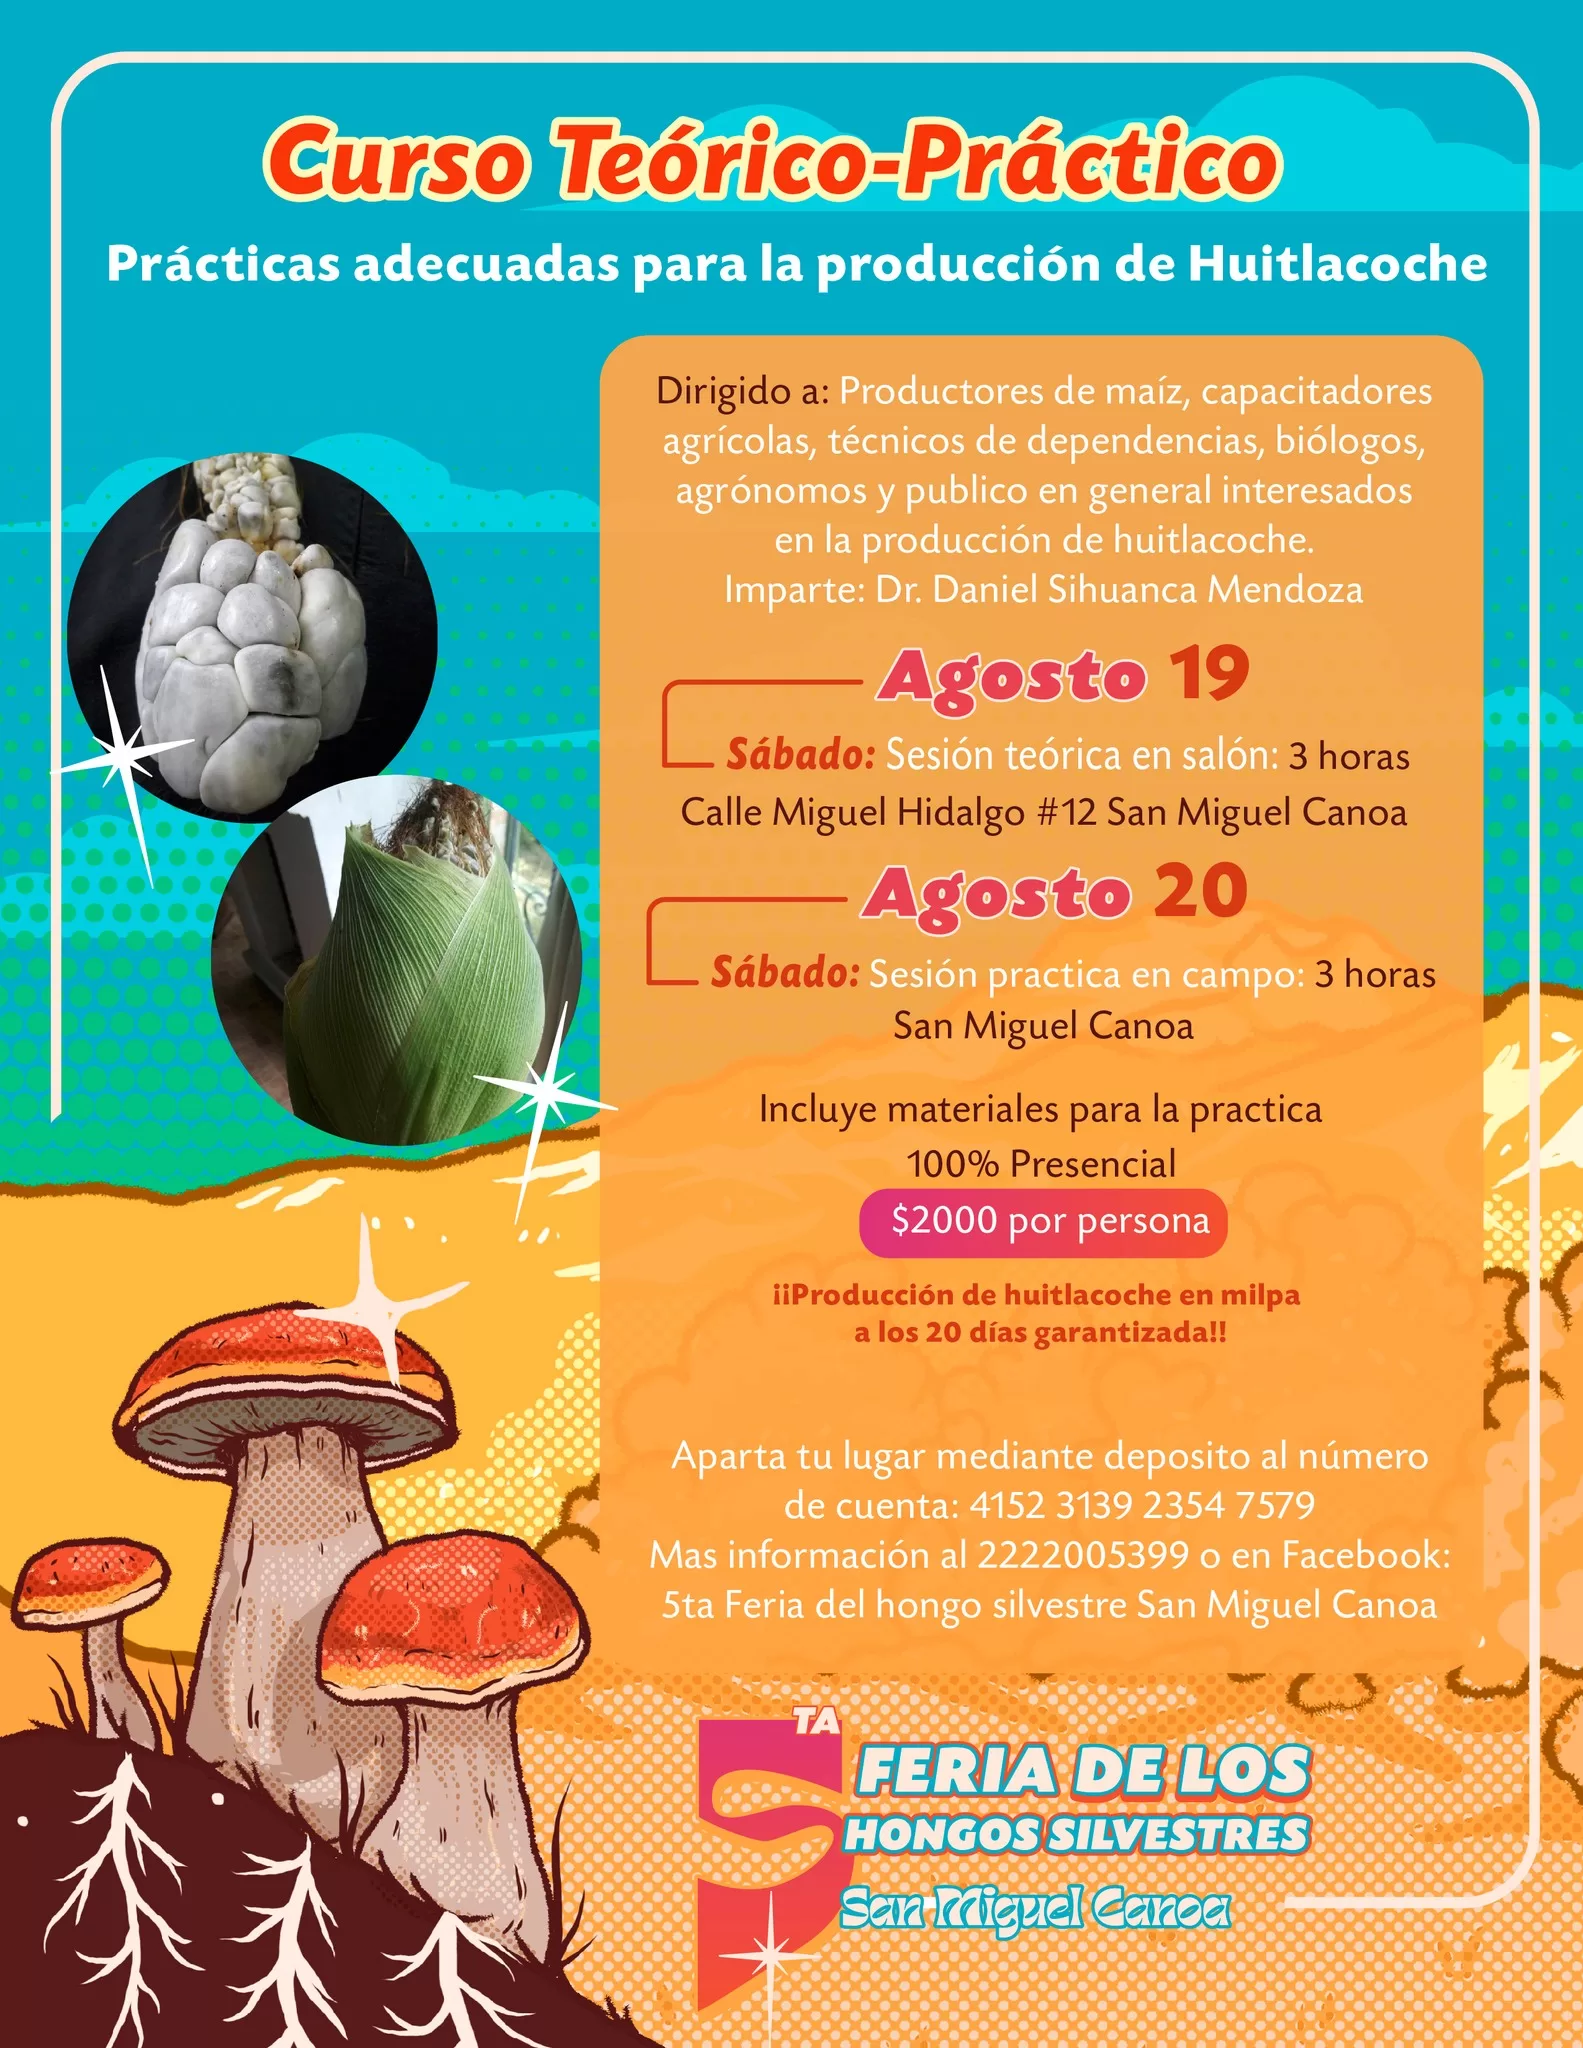 Producción de huitlacohe dentro de la Feria De los Hongos Silvestres